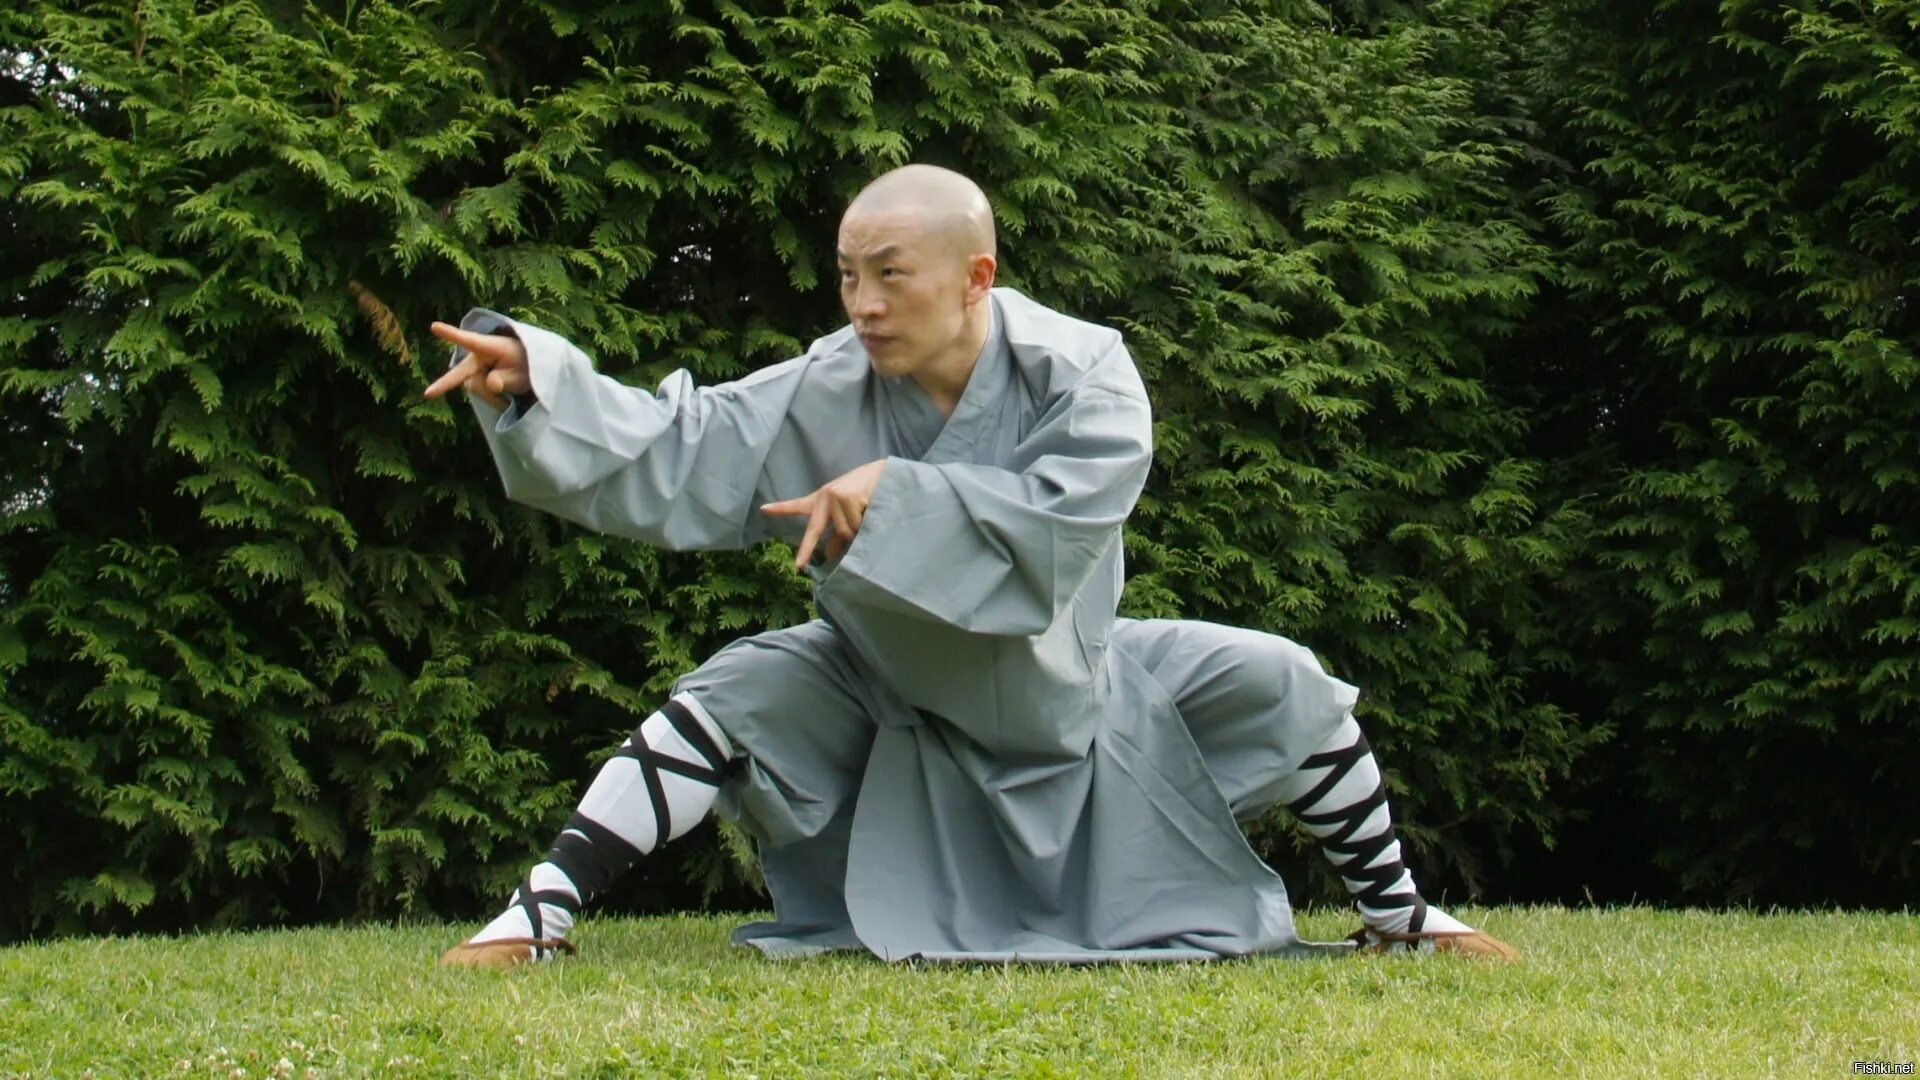 Кунг-фу / Kung Fu. Монах Шаолинь. Монах Шао Линь кланяется. Шаолиньское кунг фу.